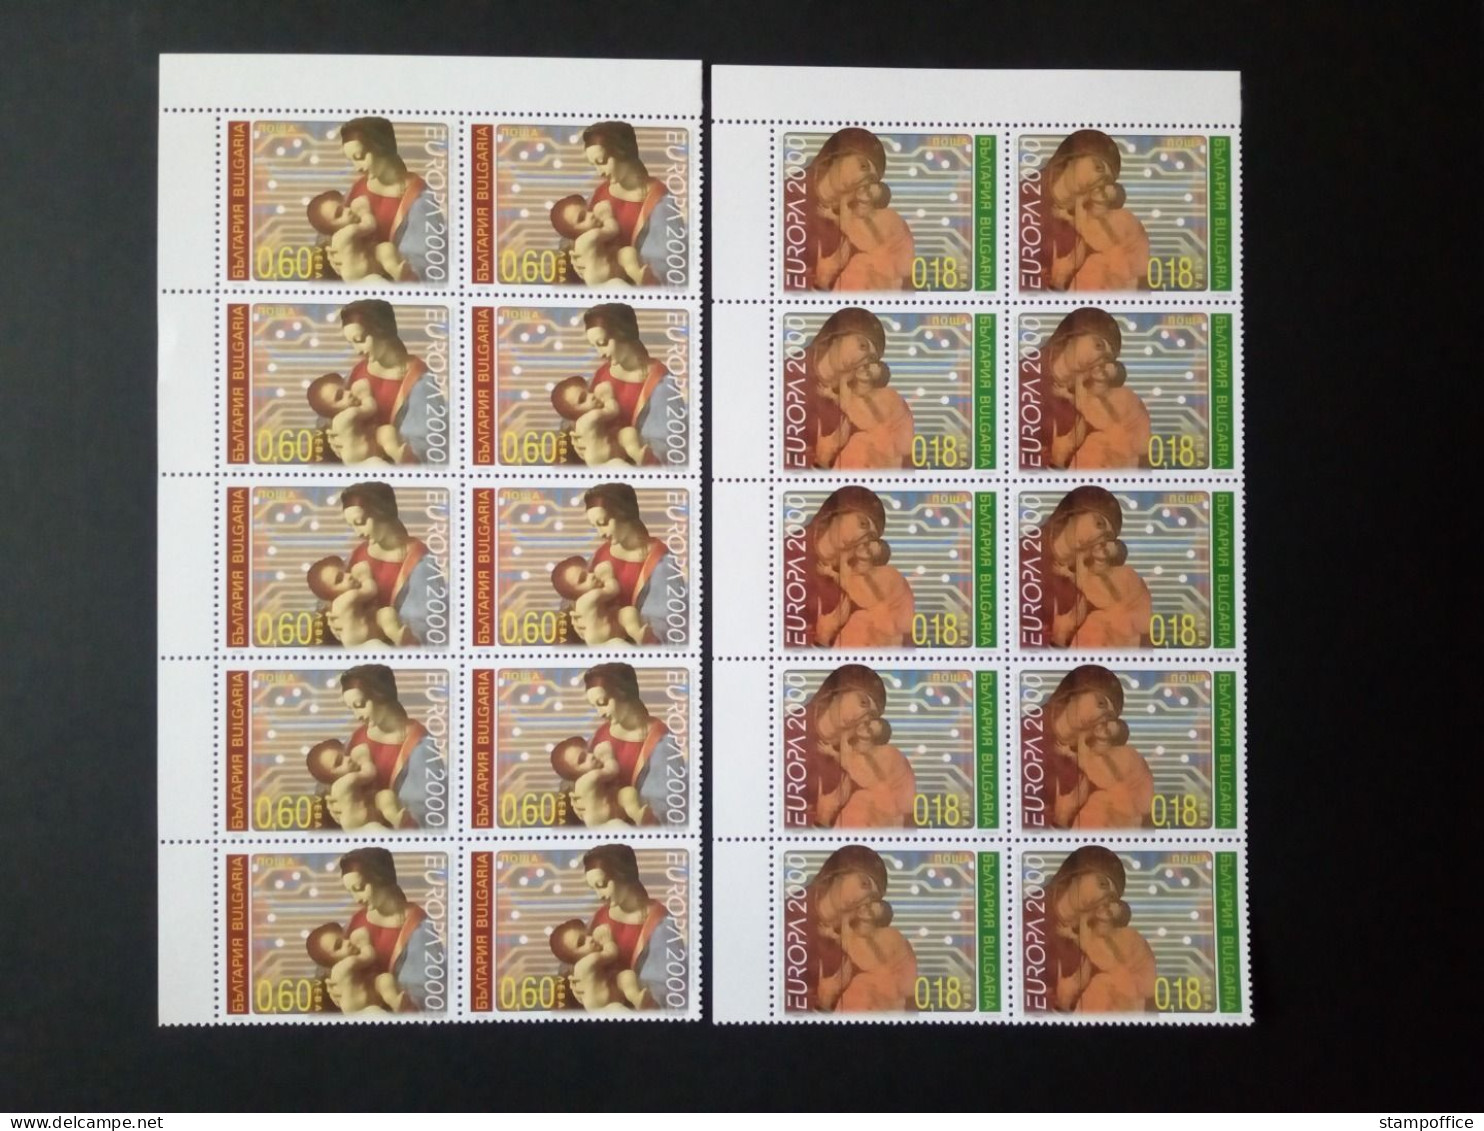 BULGARIEN MI-NR. 4453-4454 POSTFRISCH(MINT) 10er EINHEIT EUROPA 2000 LEONARDO DA VINCI - Unused Stamps